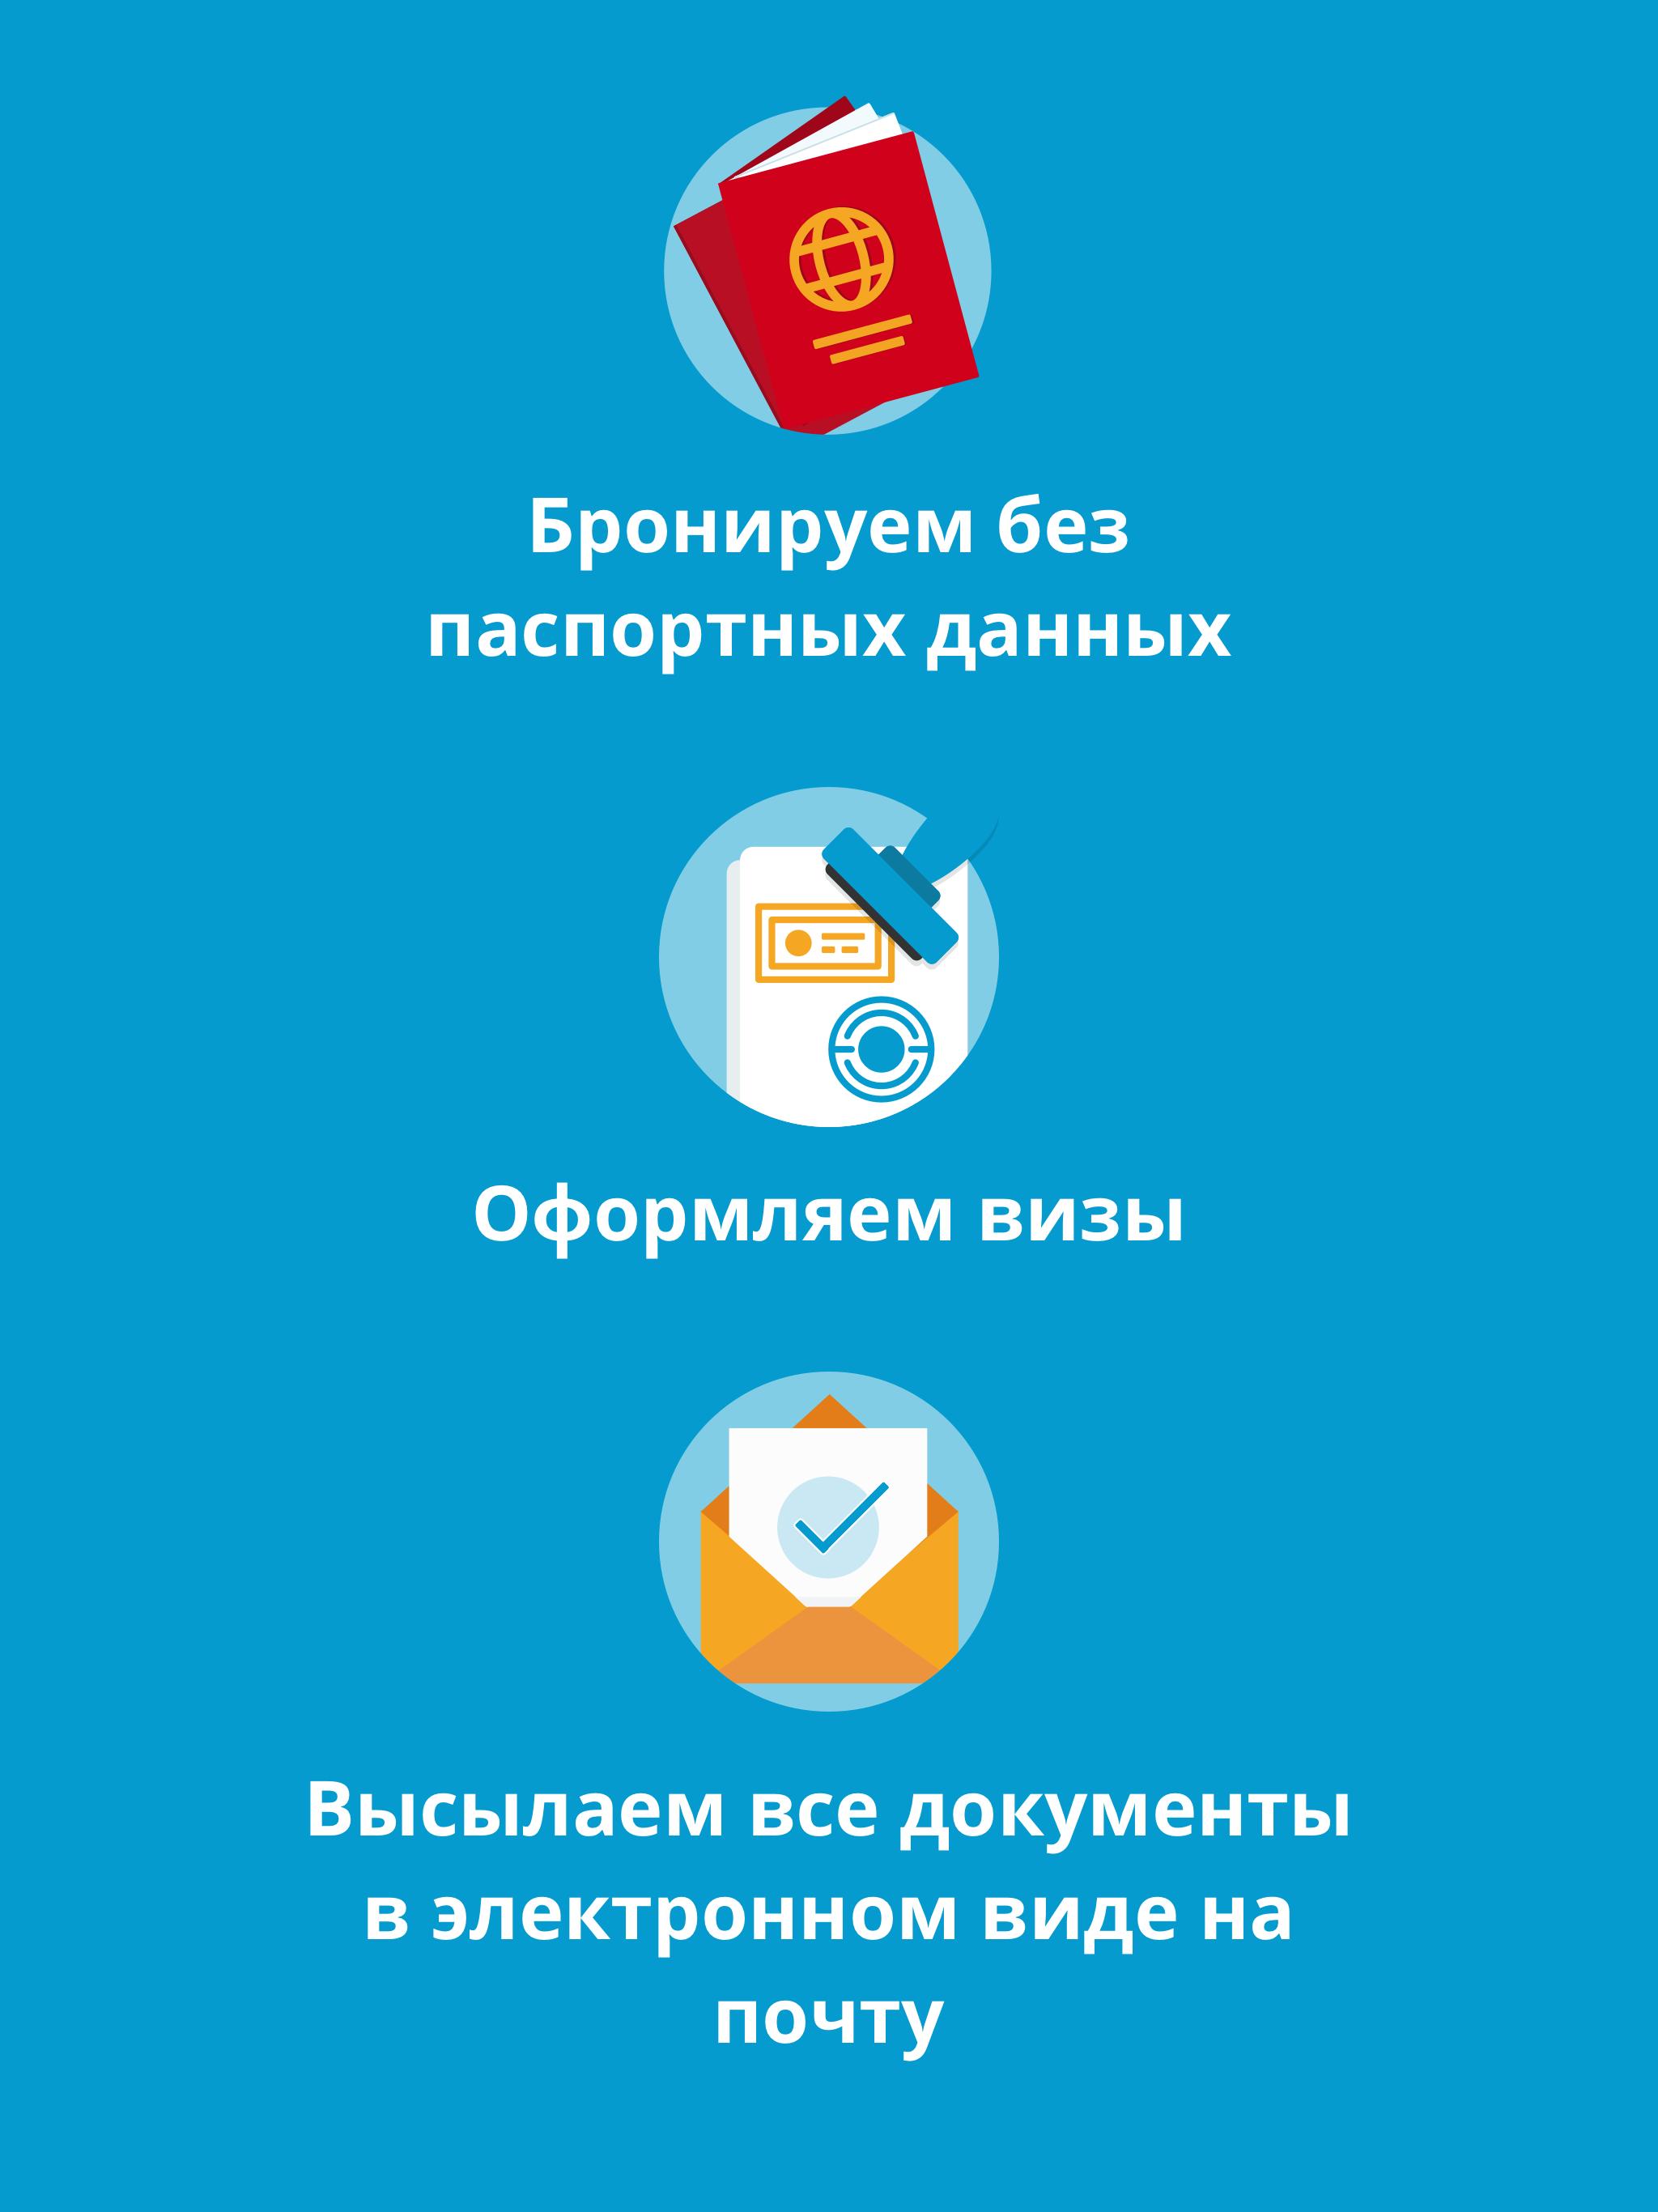 Travelata.ru Все горящие туры и путевки онлайн 3.6.7 Screenshot 15